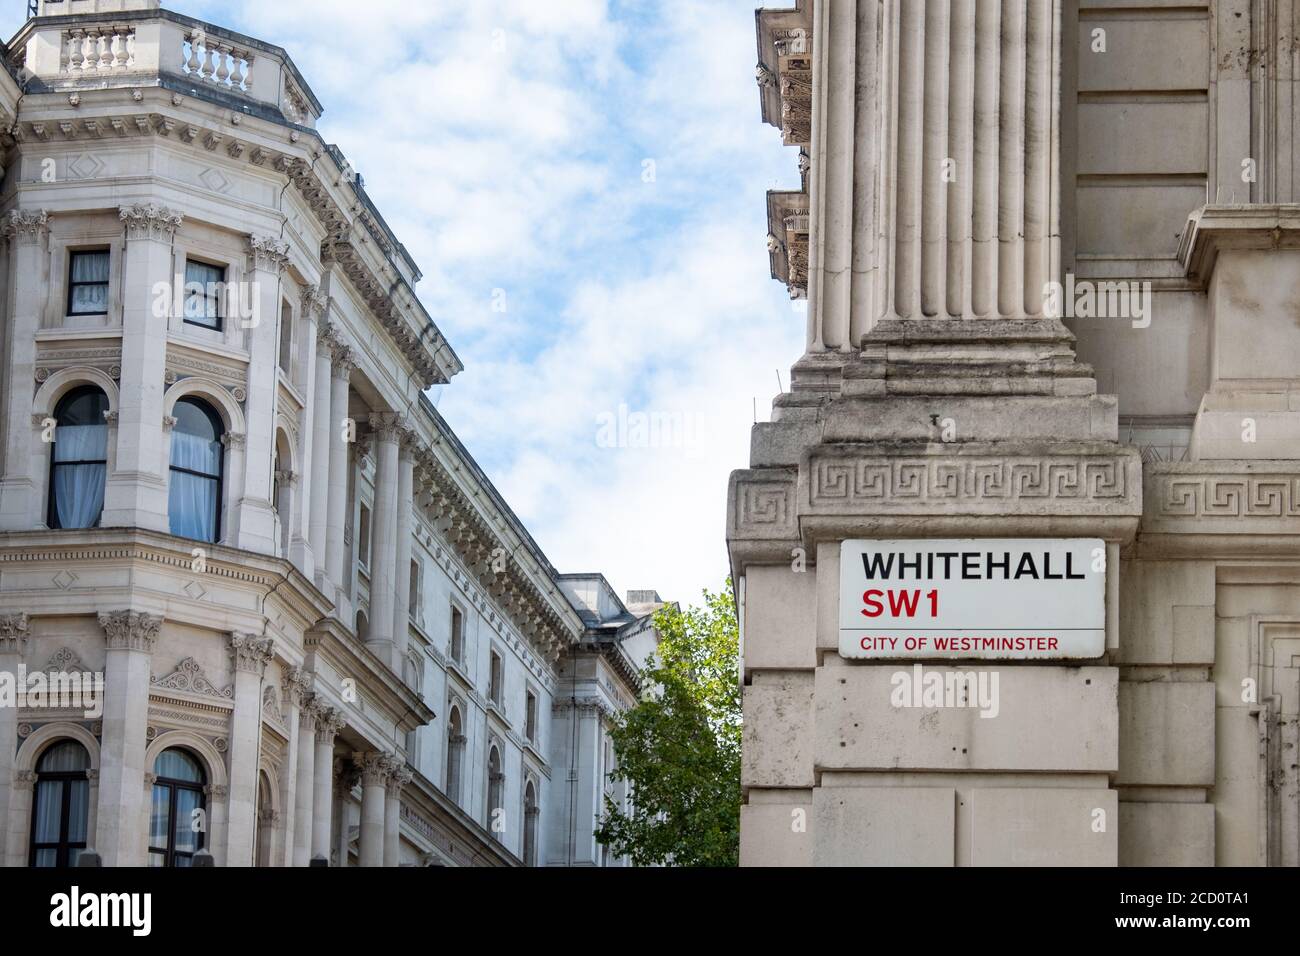 Londres- Whitehall et Downing Street, le siège du gouvernement du Royaume-Uni Banque D'Images